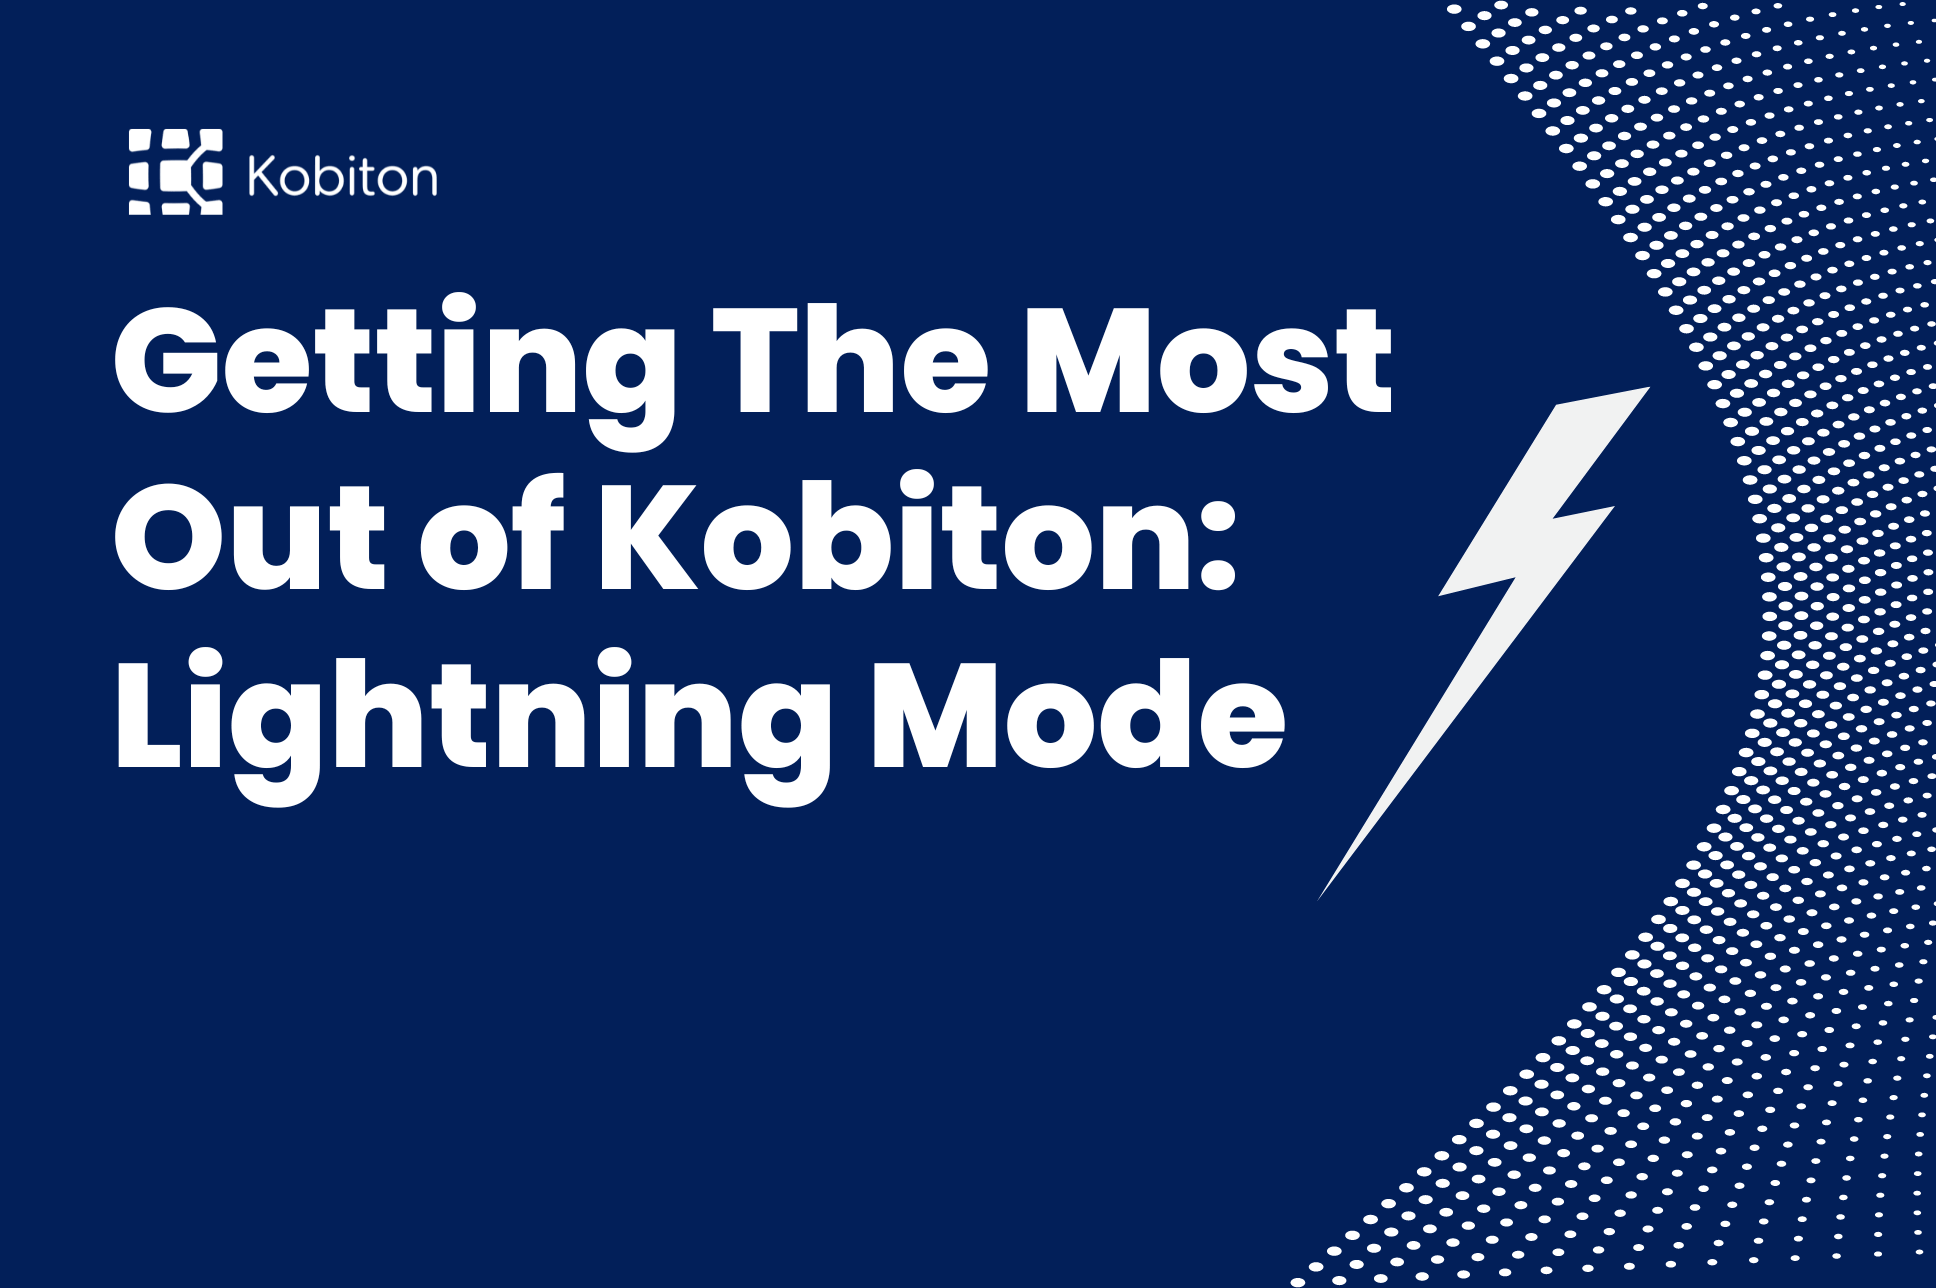 Lightning Mode